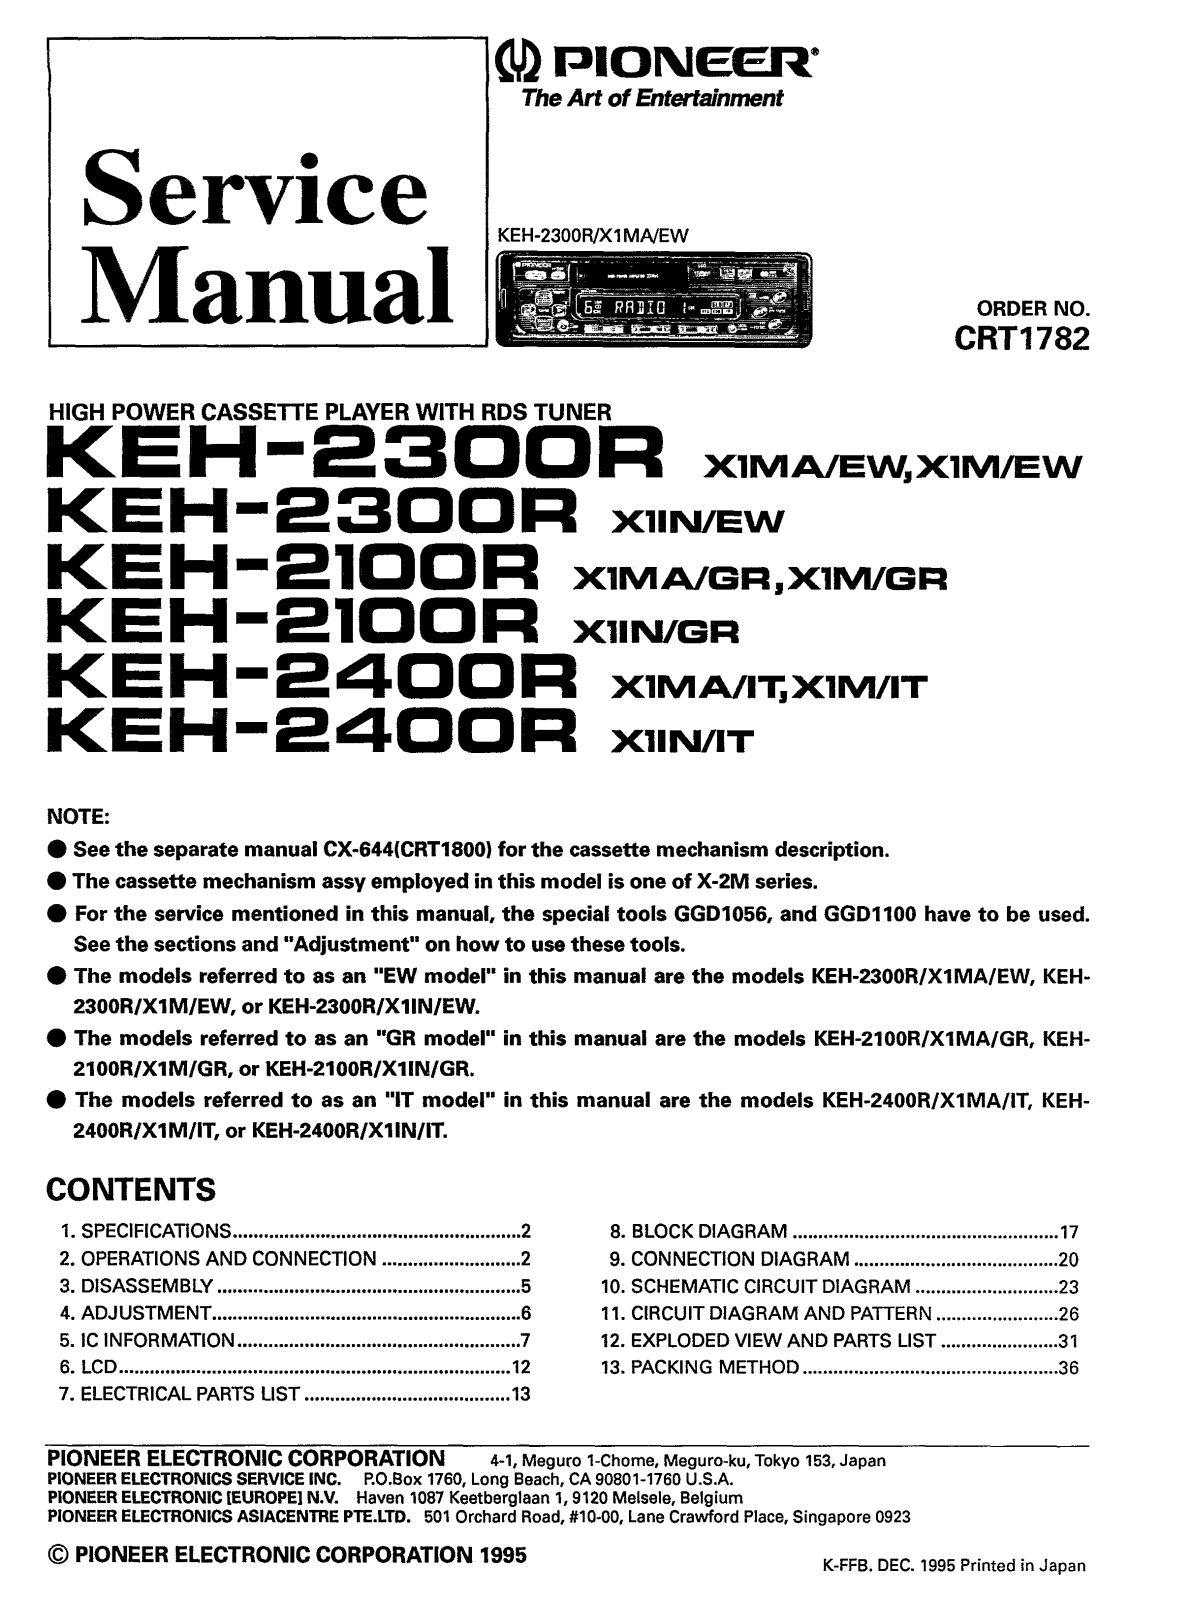 PIONEER KEH-2300, KEH-2100, KEH-2400 Service Manual